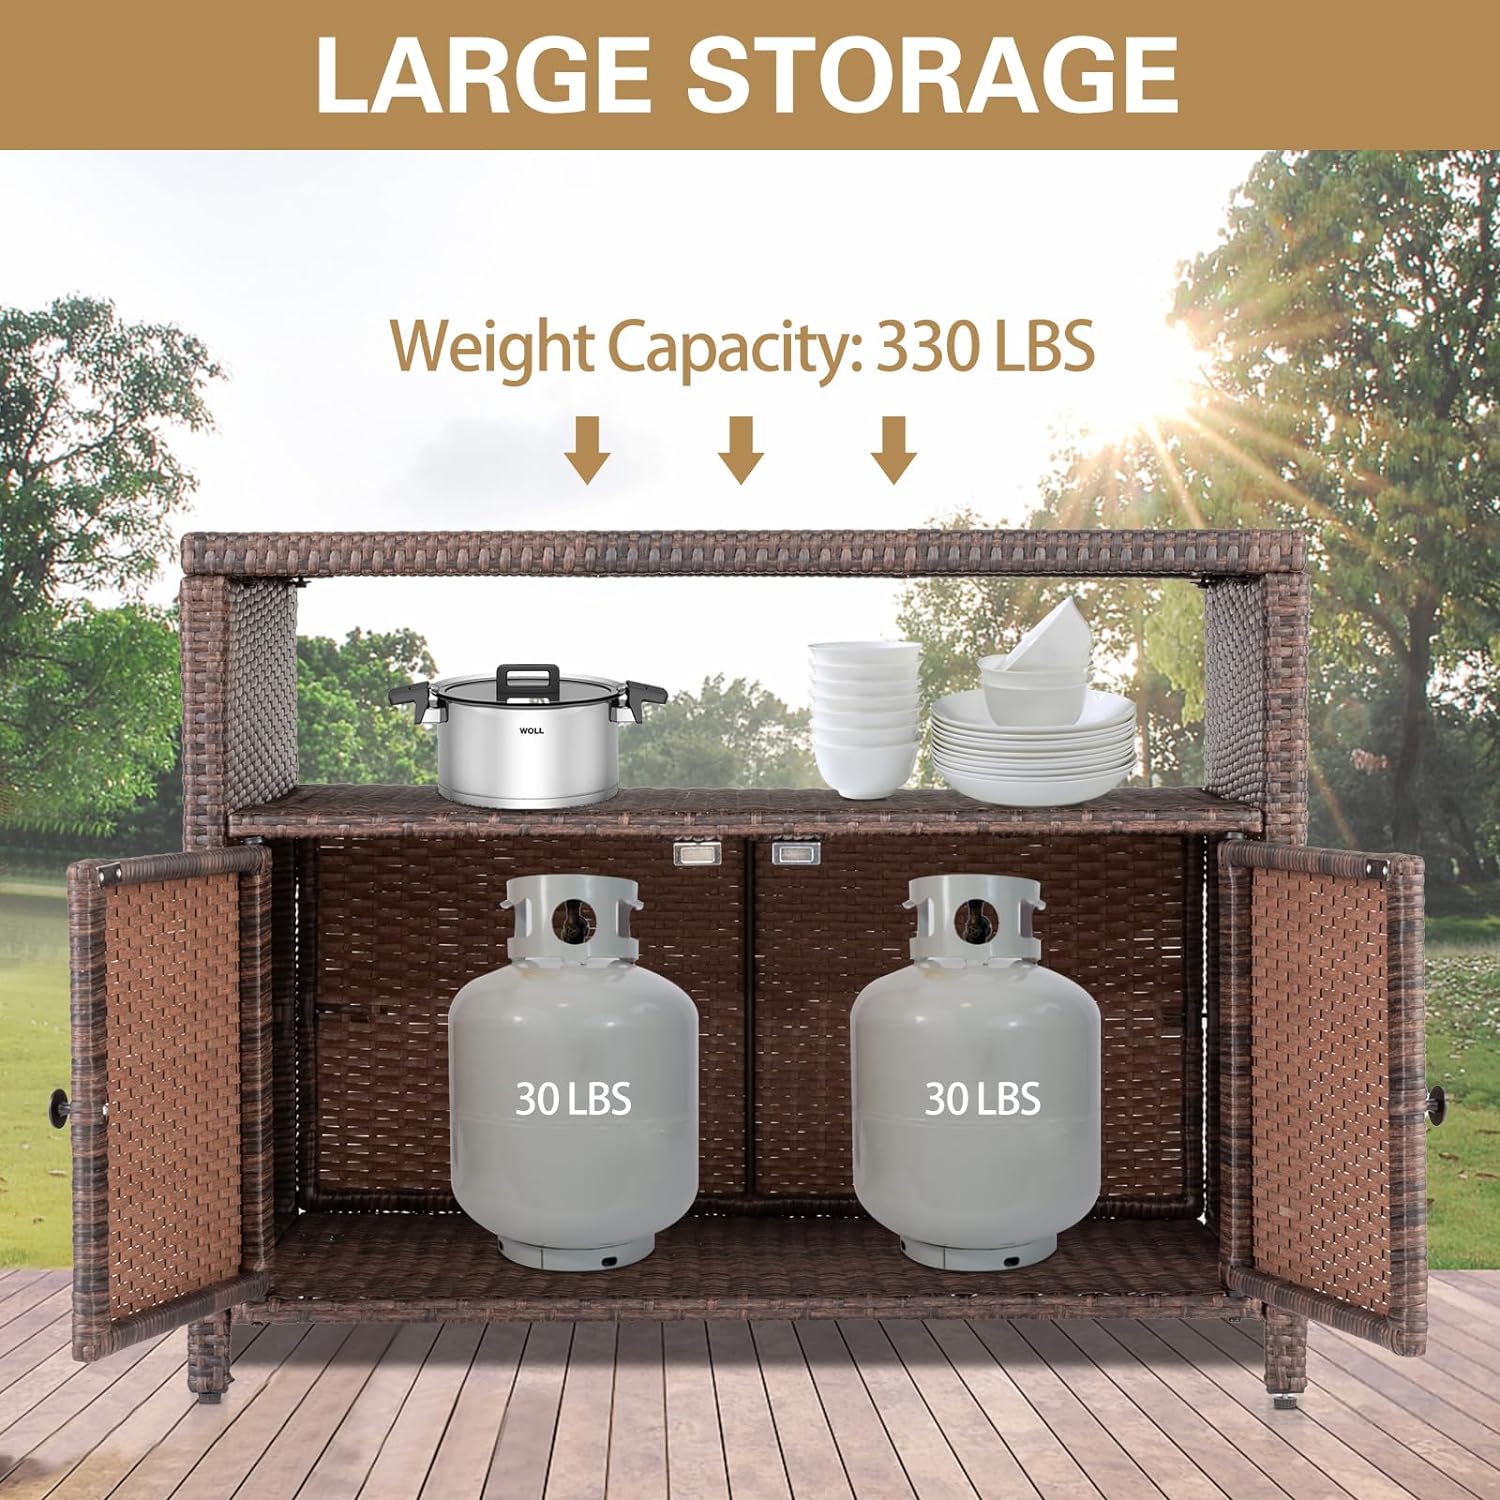 Eclife Outdoor Wicker Rattan Storage Cabinet with 2 Doors, Shelves & Polystyrene Top